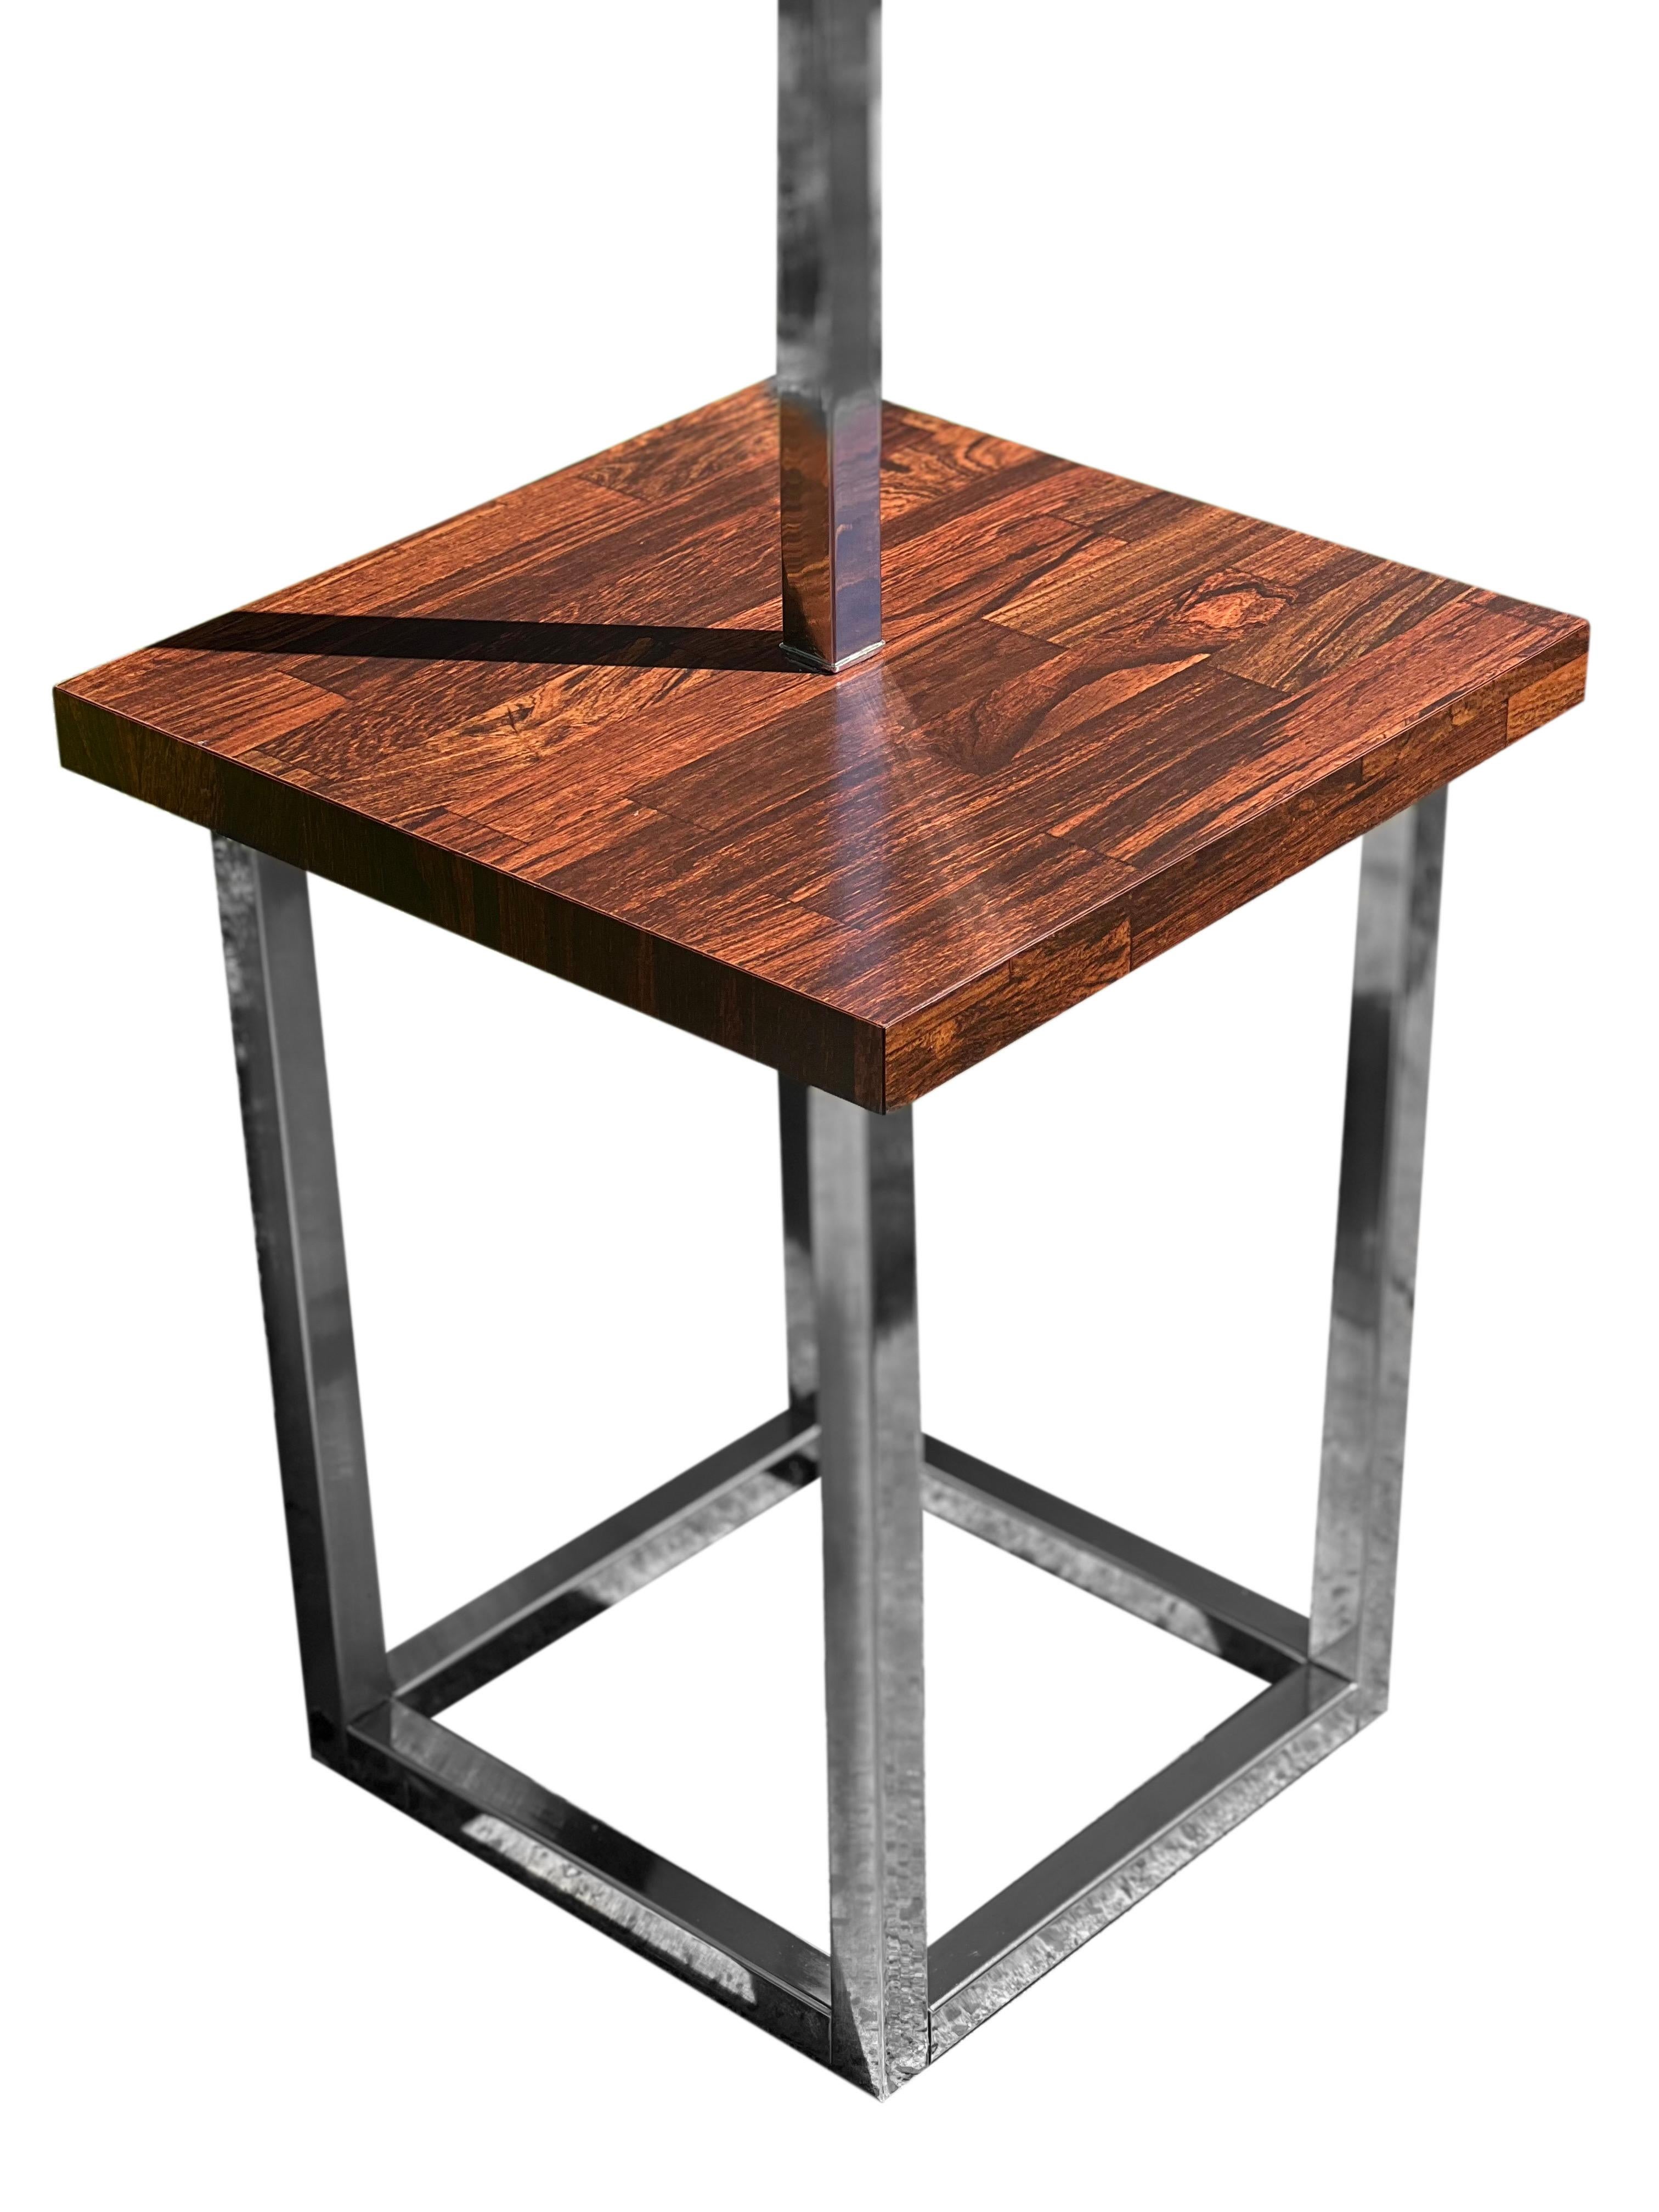 Elegant lampadaire moderne avec table en bois de rose et chrome.

La lampe se compose d'une base chromée carrée de 12